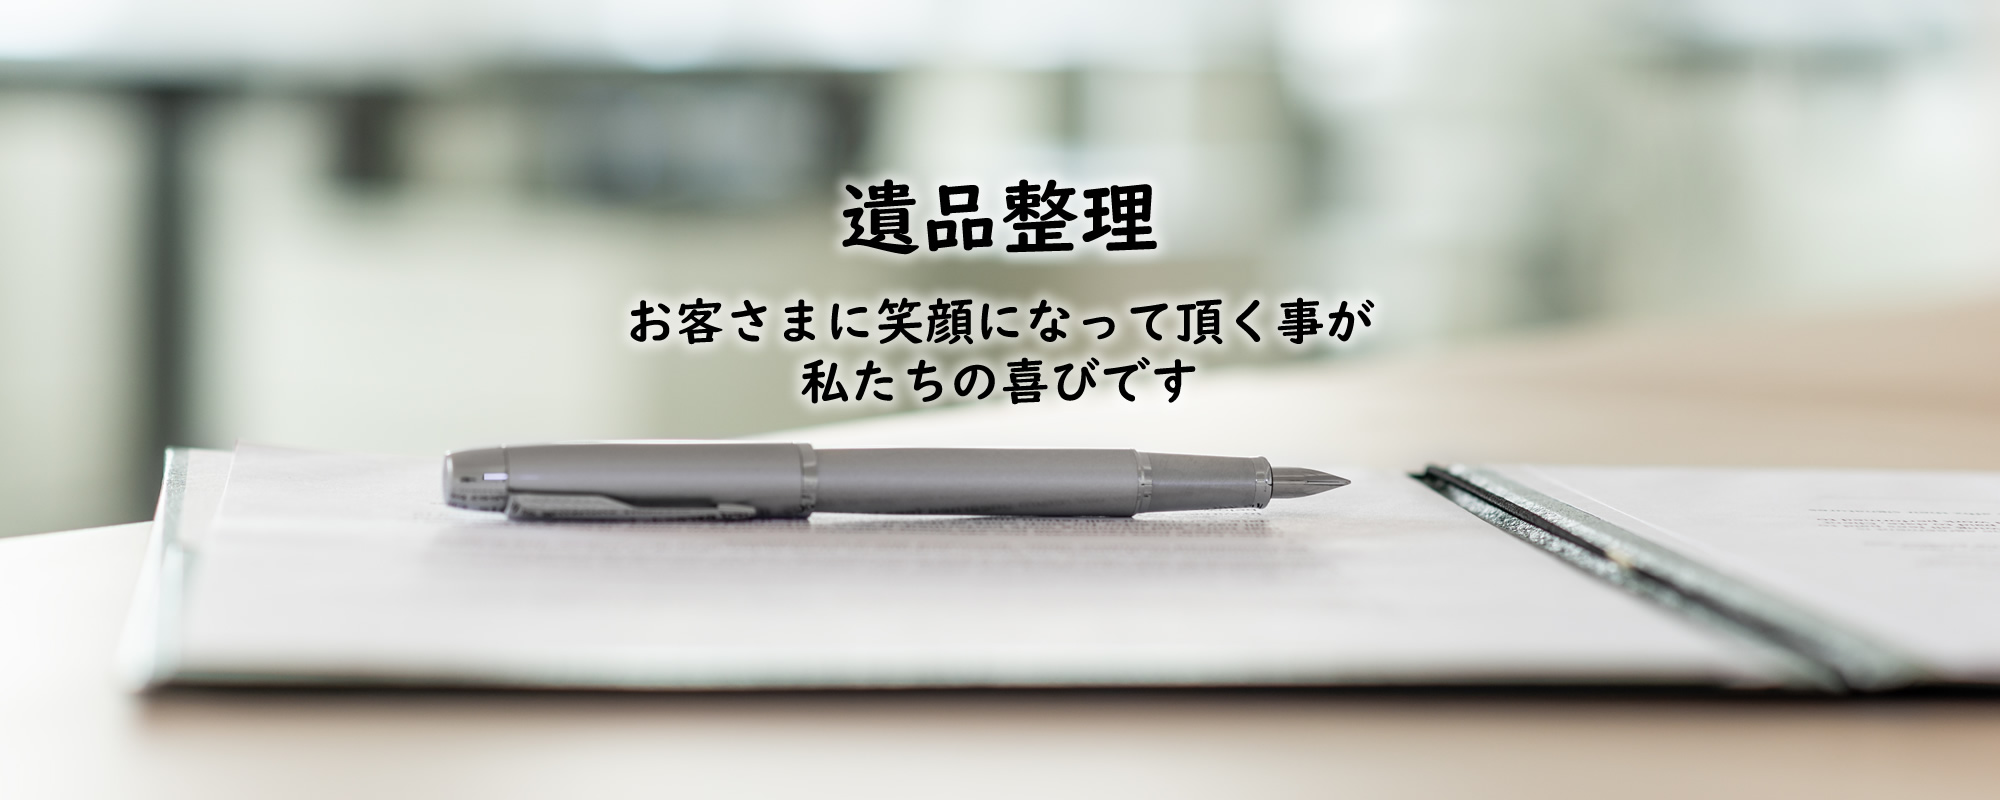 神奈川の遺品整理なら片づけコーナン株式会社 港南サービスメイン画像3